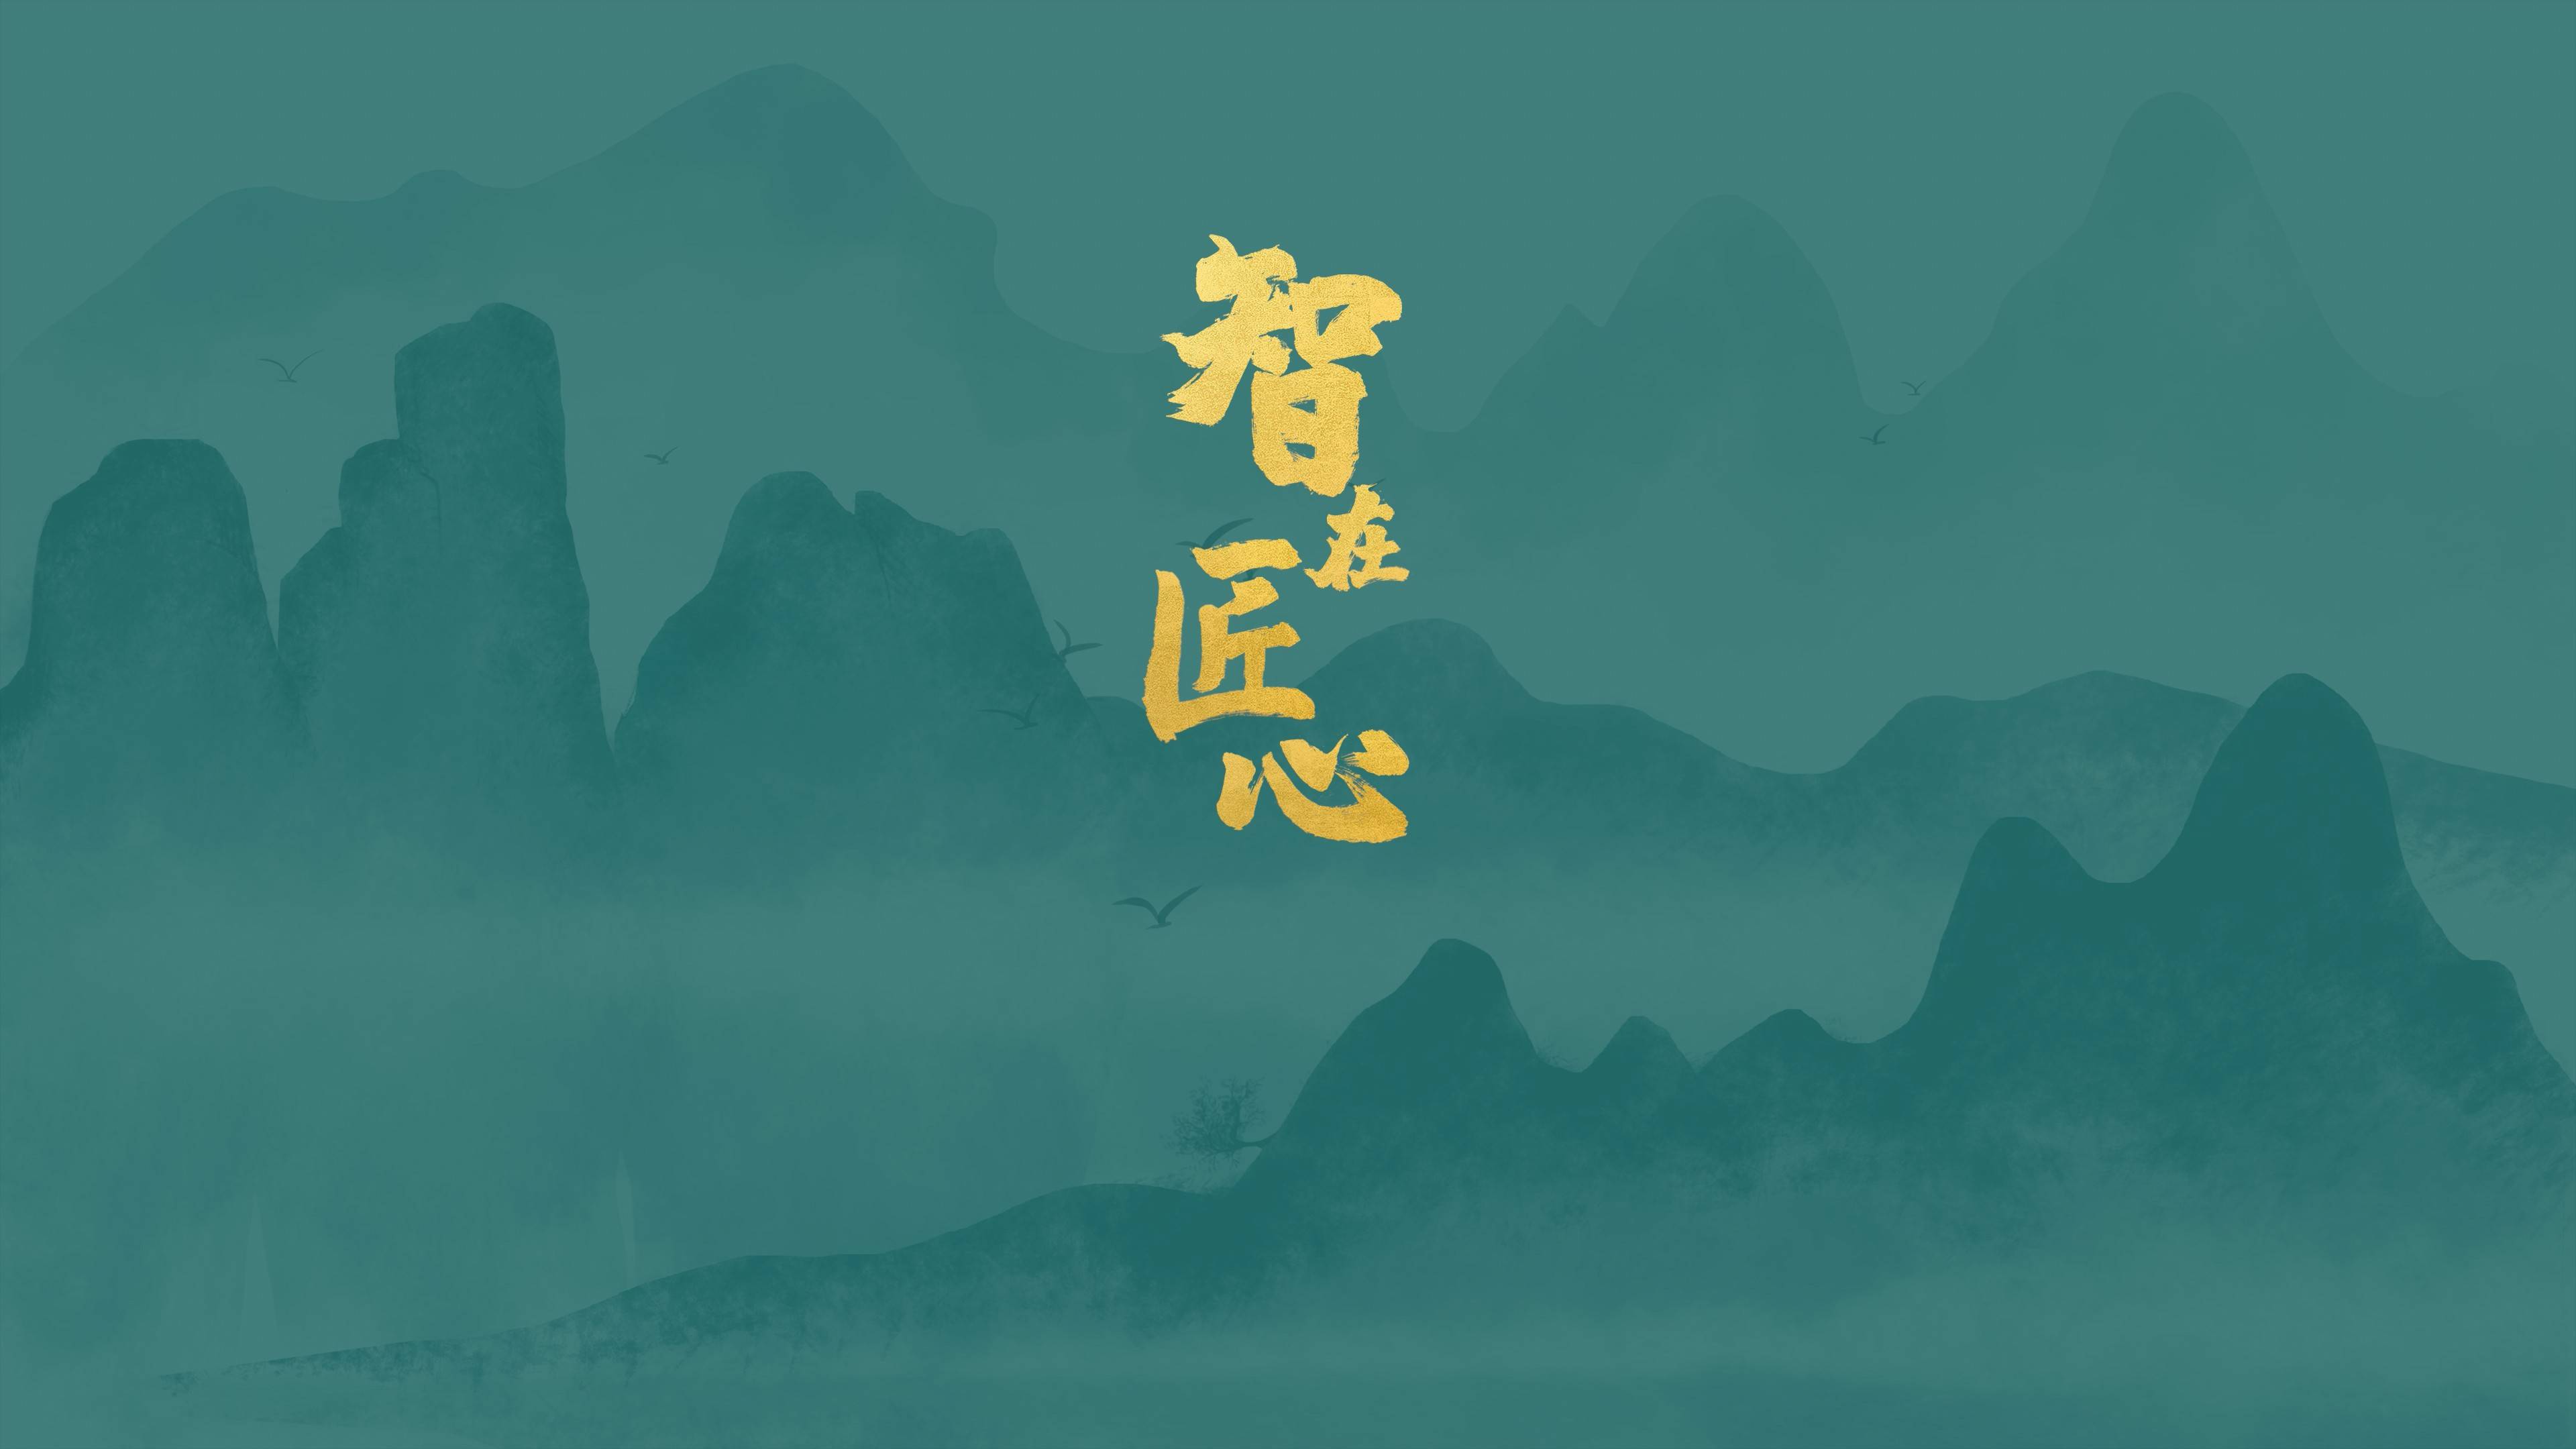 系列人文纪录片《智在匠心》——刘仰根:与山为伴 纸寿千年